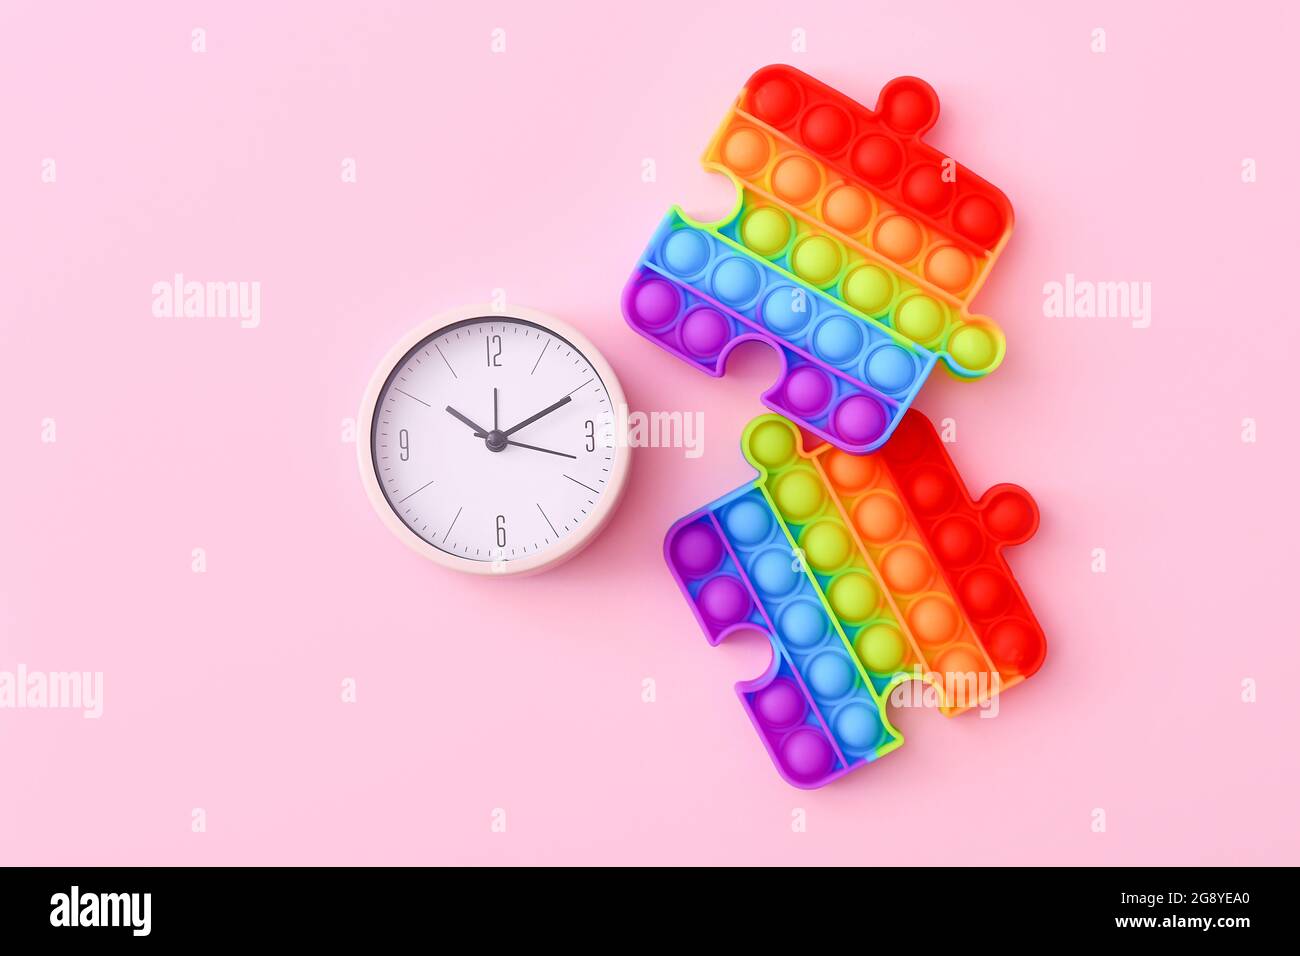 Farbenfrohe Antistress-Sinnesspielzeug mit Uhr auf rosa Hintergrund, Draufsicht Stockfoto